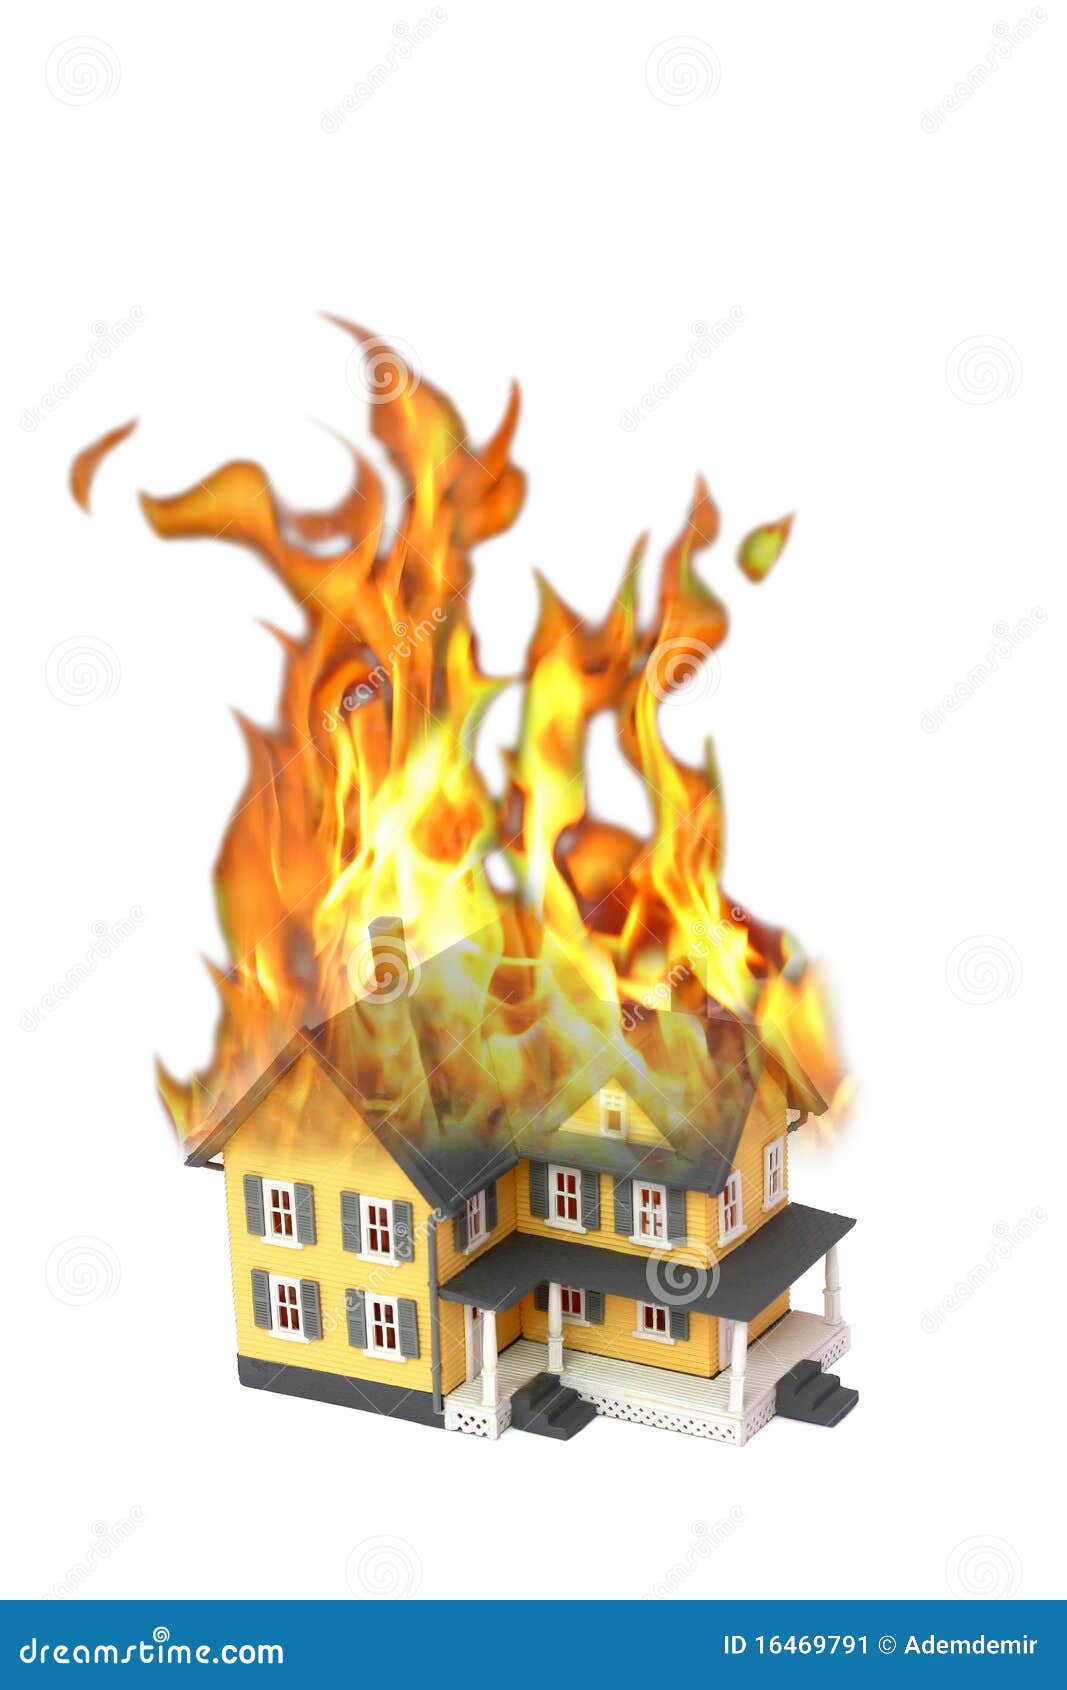 clipart burning house - photo #22